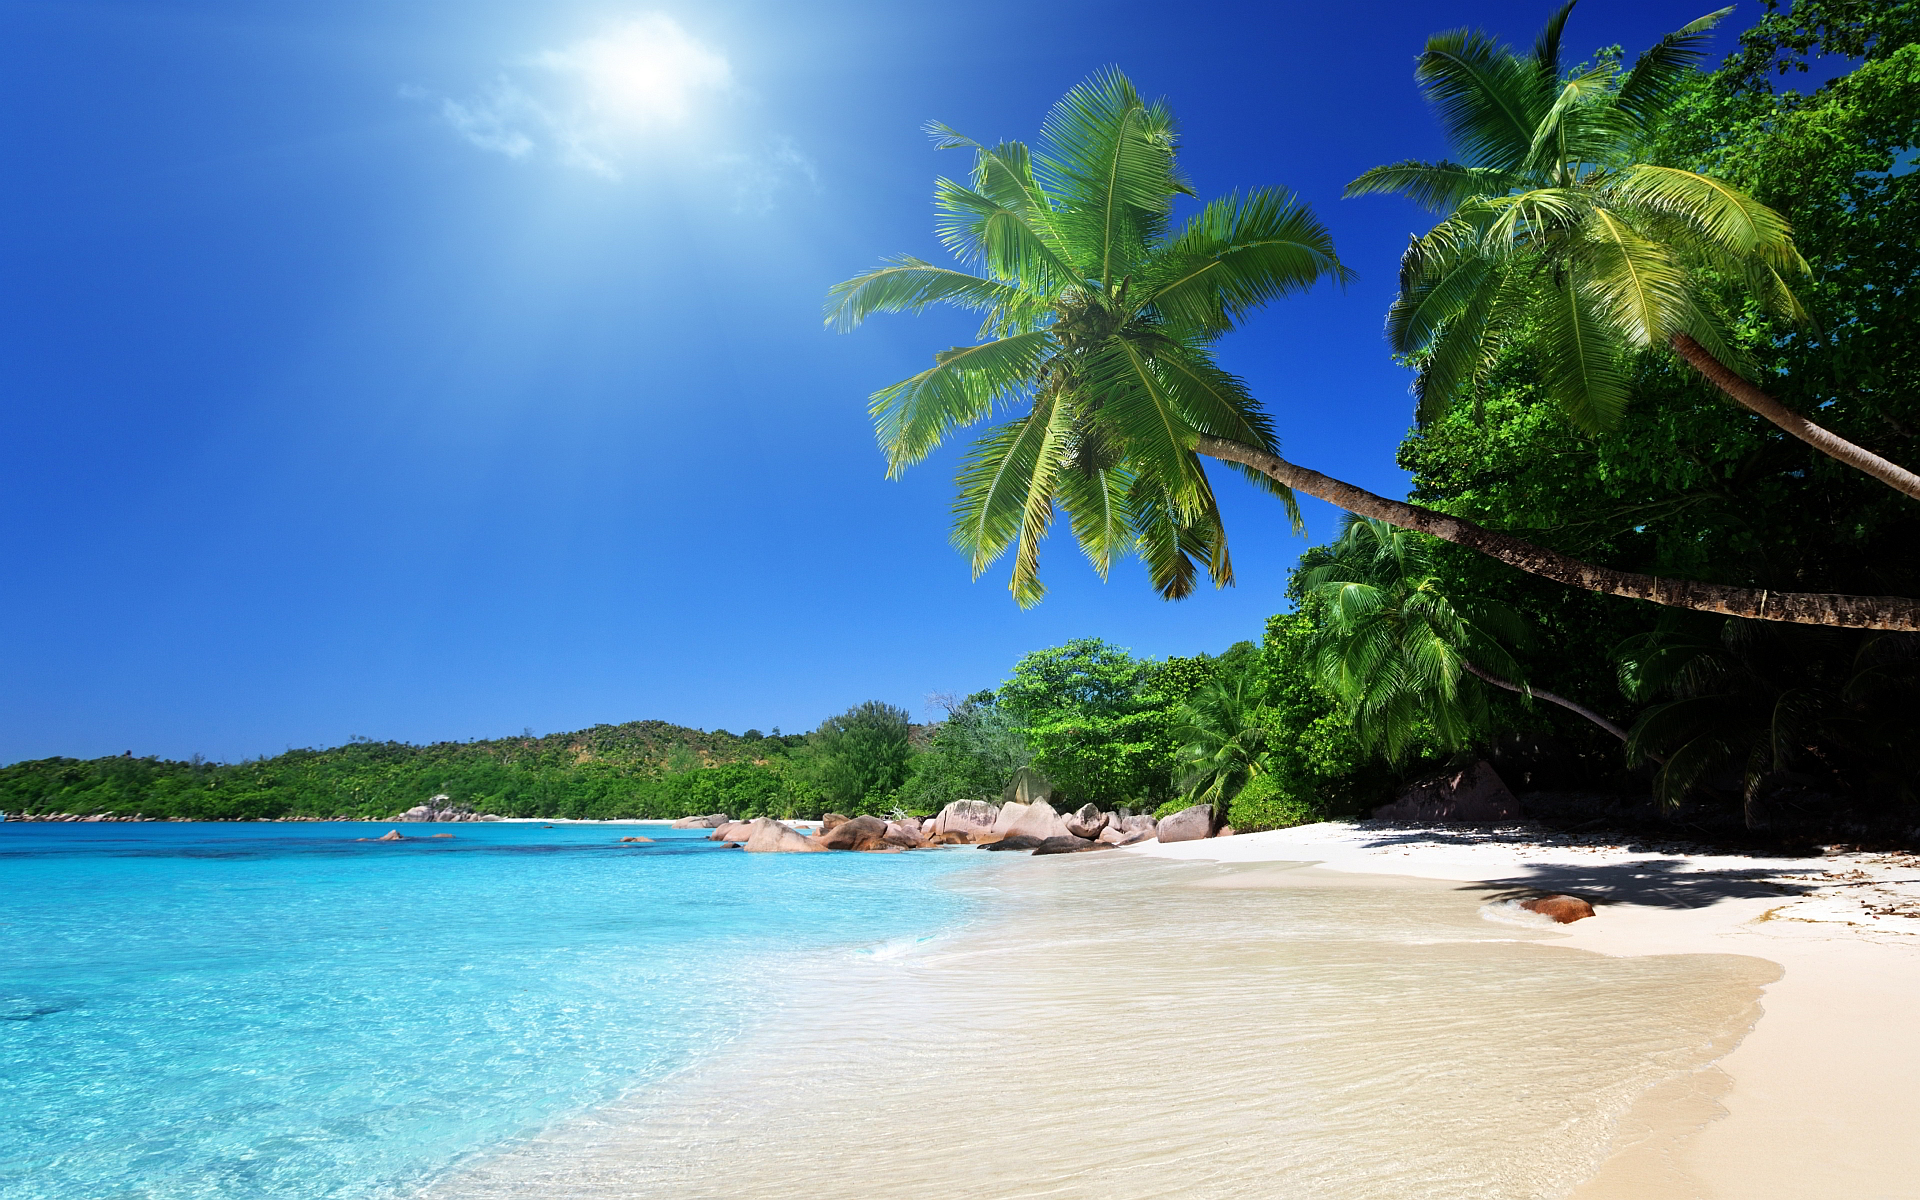 Tropical caribbean beach